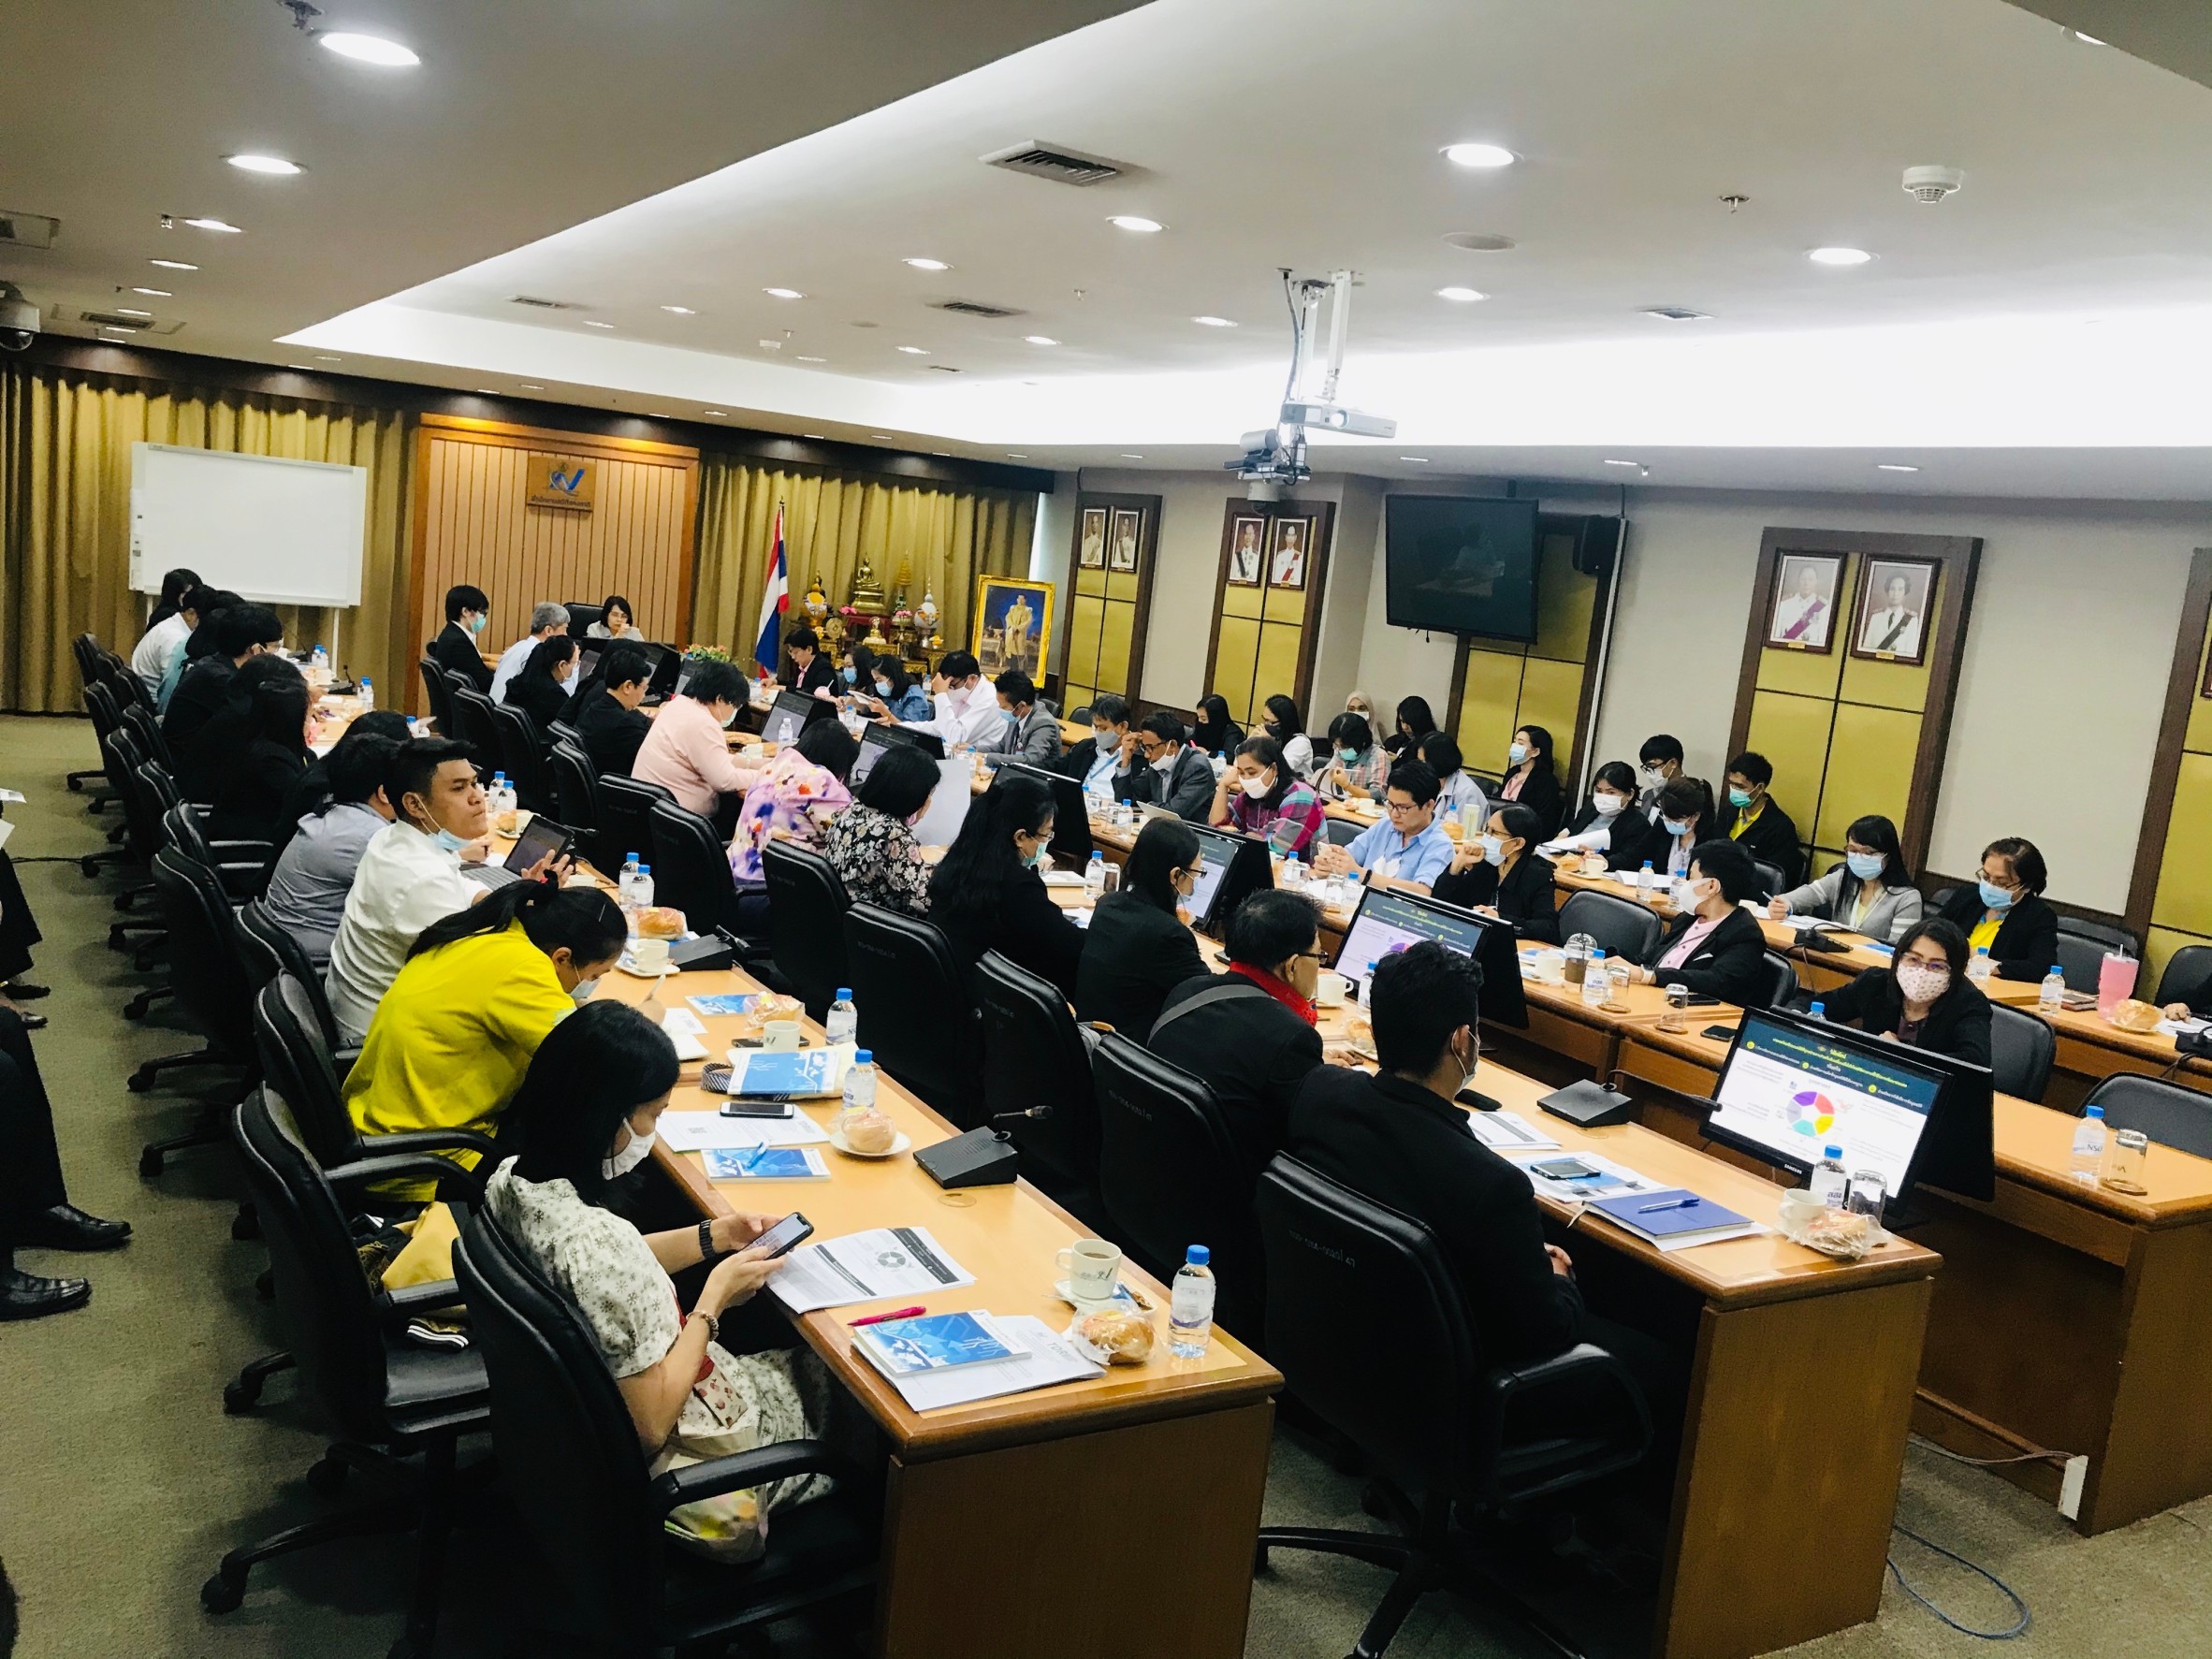 ประชุม “การปรับปรุงแผนแม่บทระบบสถิติประเทศไทย ฉบับที่ 2 (พ.ศ.2559 - 2564) ” ให้สอดคล้องกับยุทธศาสตร์ชาติและแผนแม่บทภายใต้ยุทธศาสตร์ชาติ